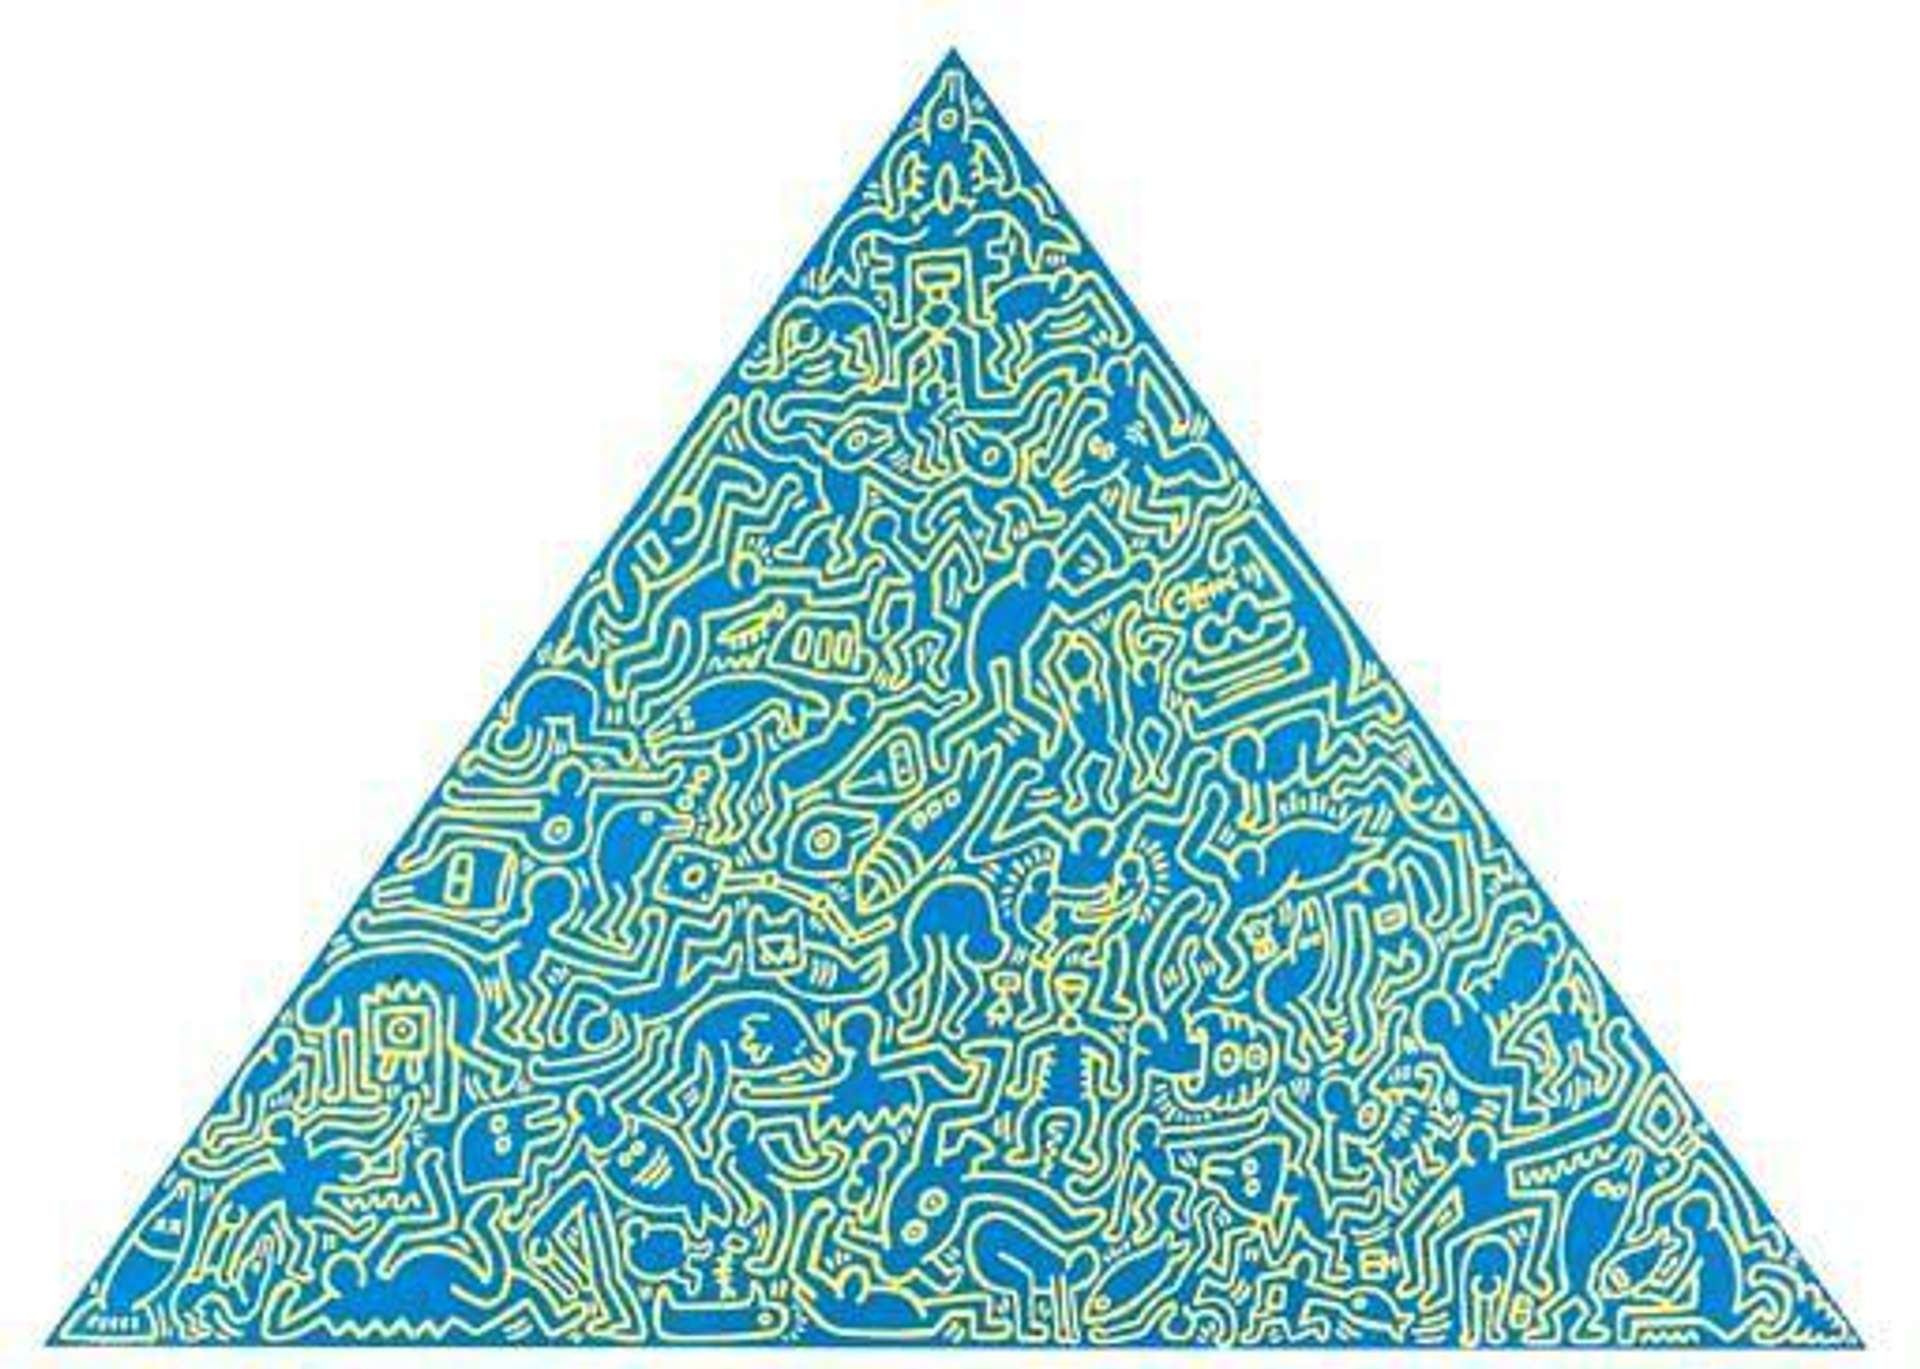 Keith Haring: Pyramid (blue) - Signed Print